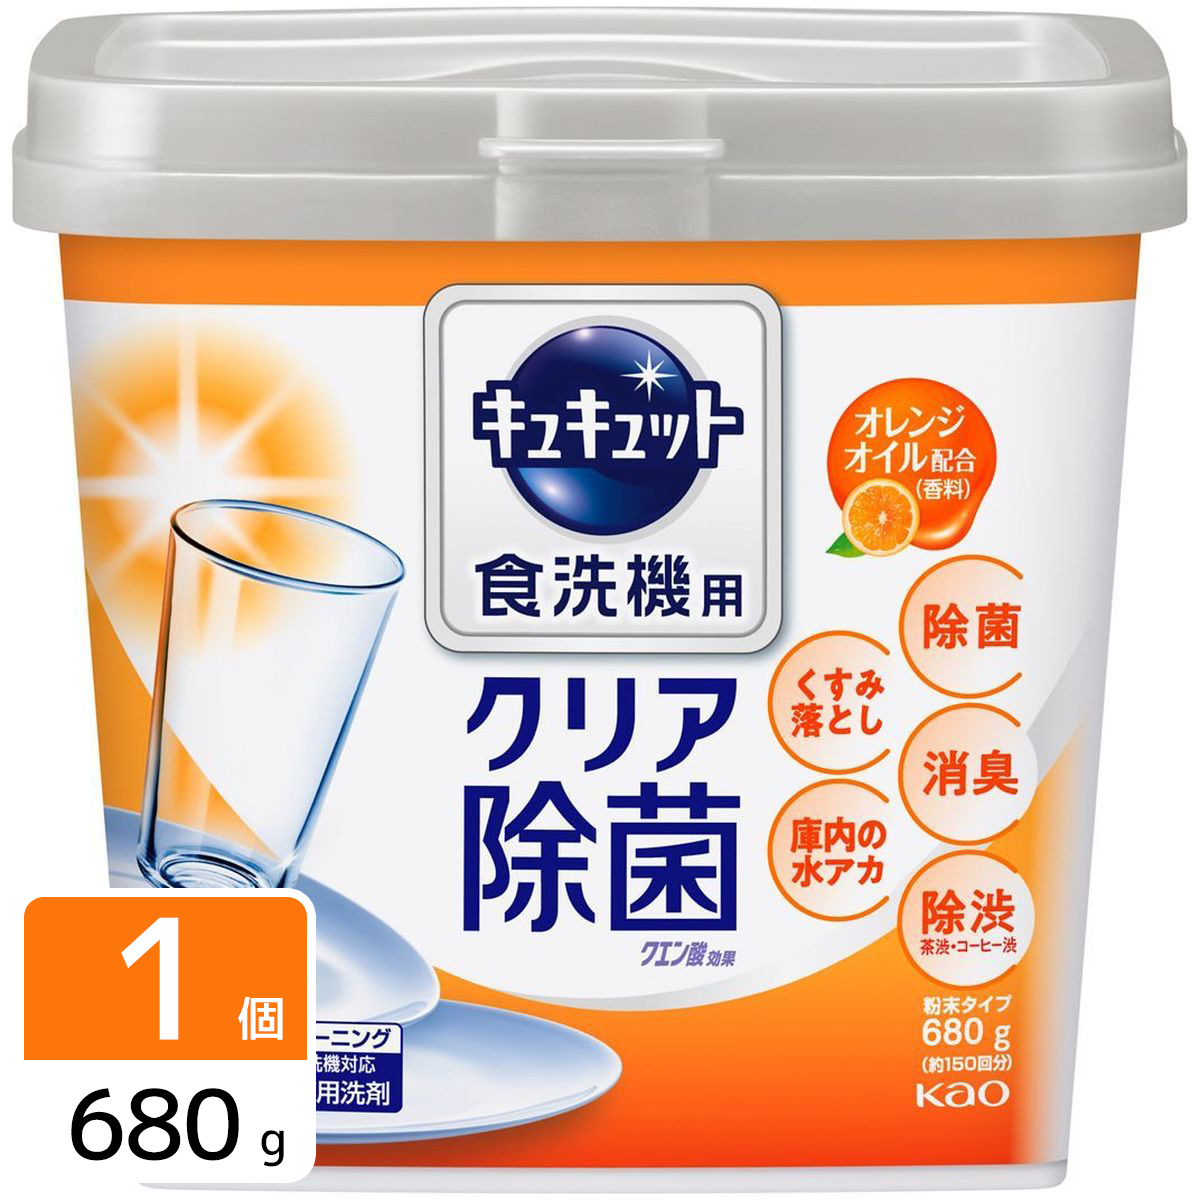 食器洗い乾燥機専用 キュキュットクエン酸効果 オレンジオイル配合 本体 680g